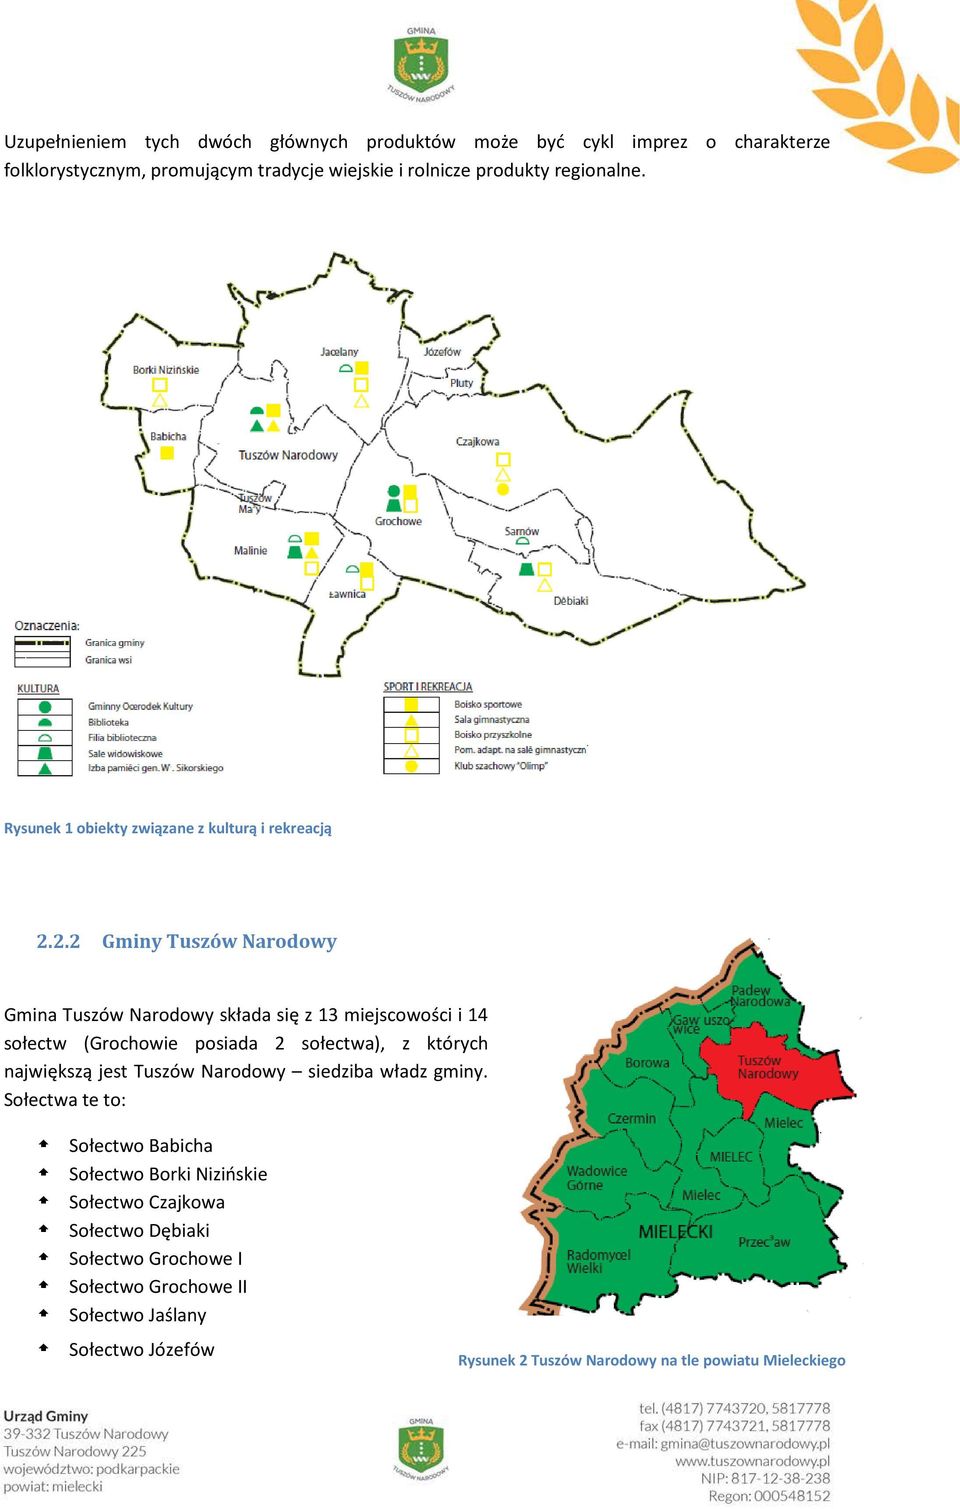 2.2 Gminy Tuszów Narodowy Gmina Tuszów Narodowy składa się z 13 miejscowości i 14 sołectw (Grochowie posiada 2 sołectwa), z których największą jest